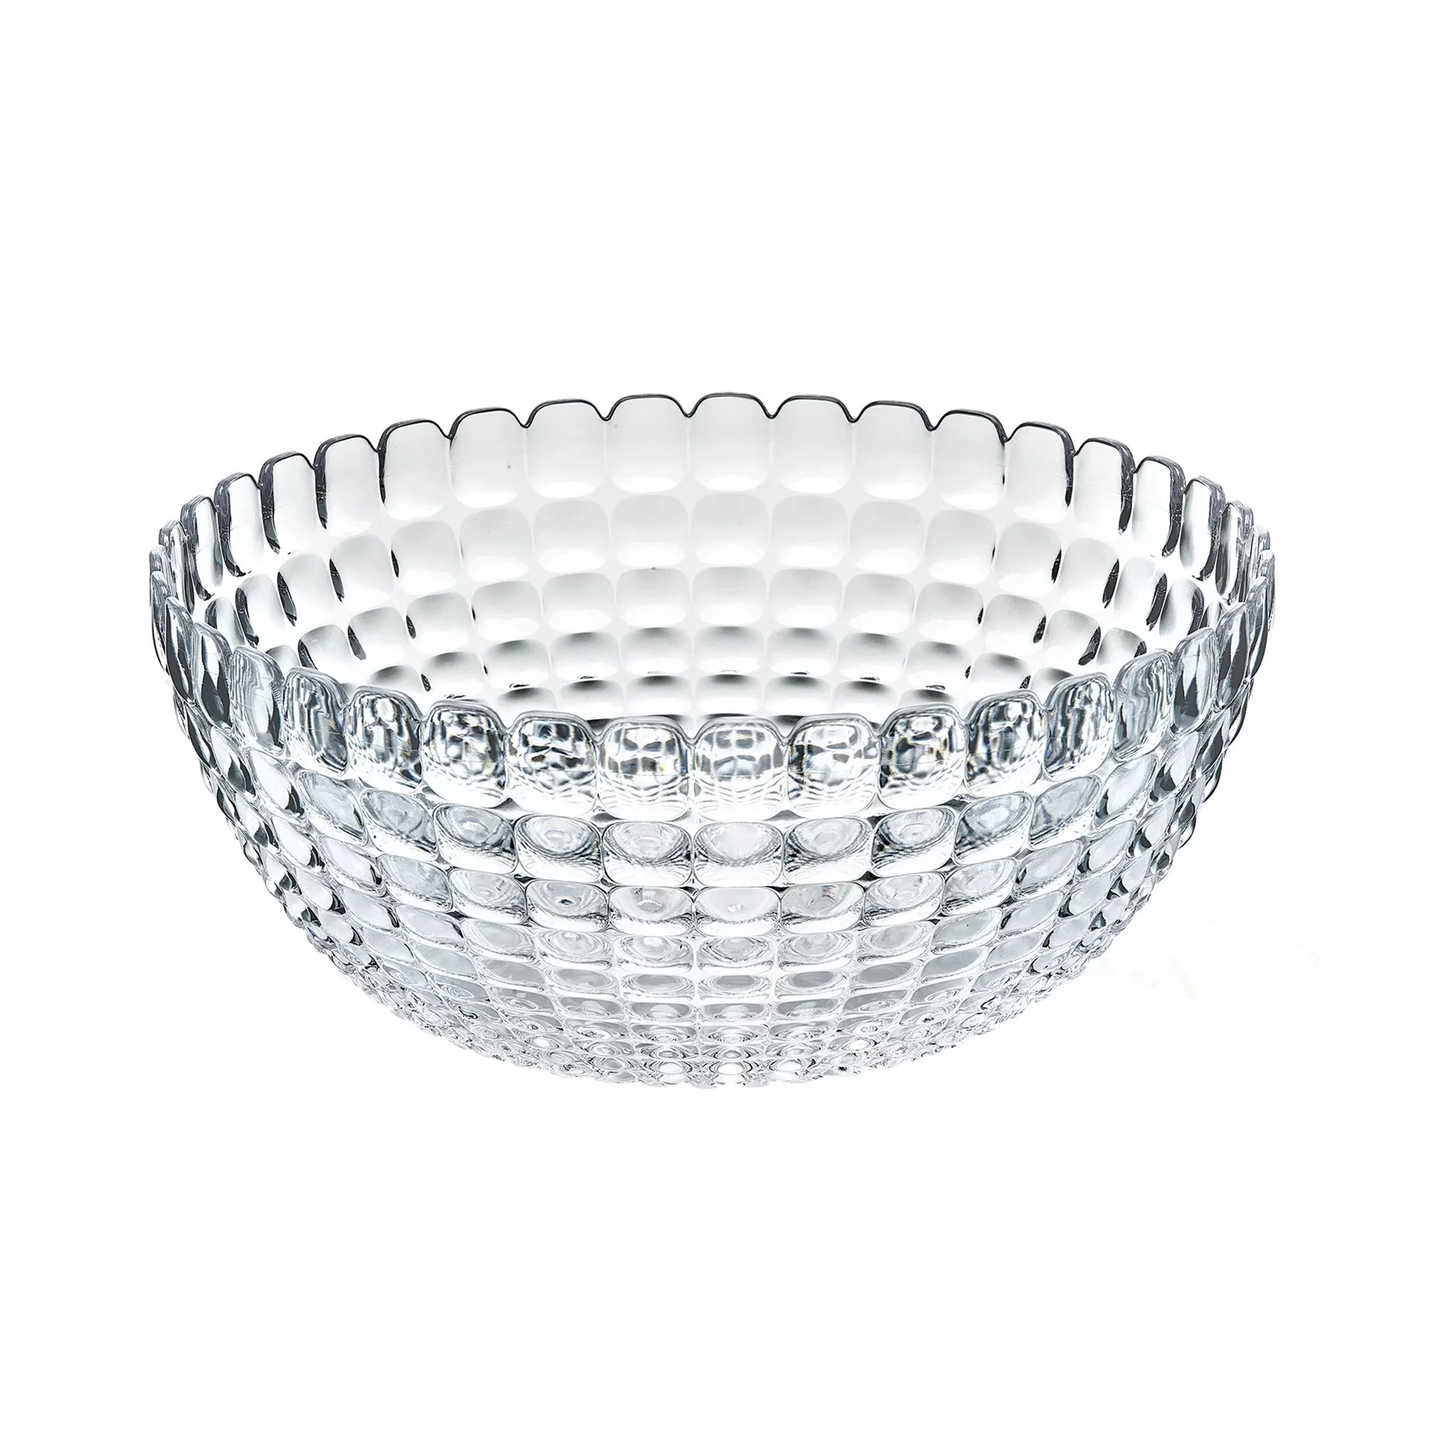 Guzzini Tiffany L bowl 25x11 cm clear